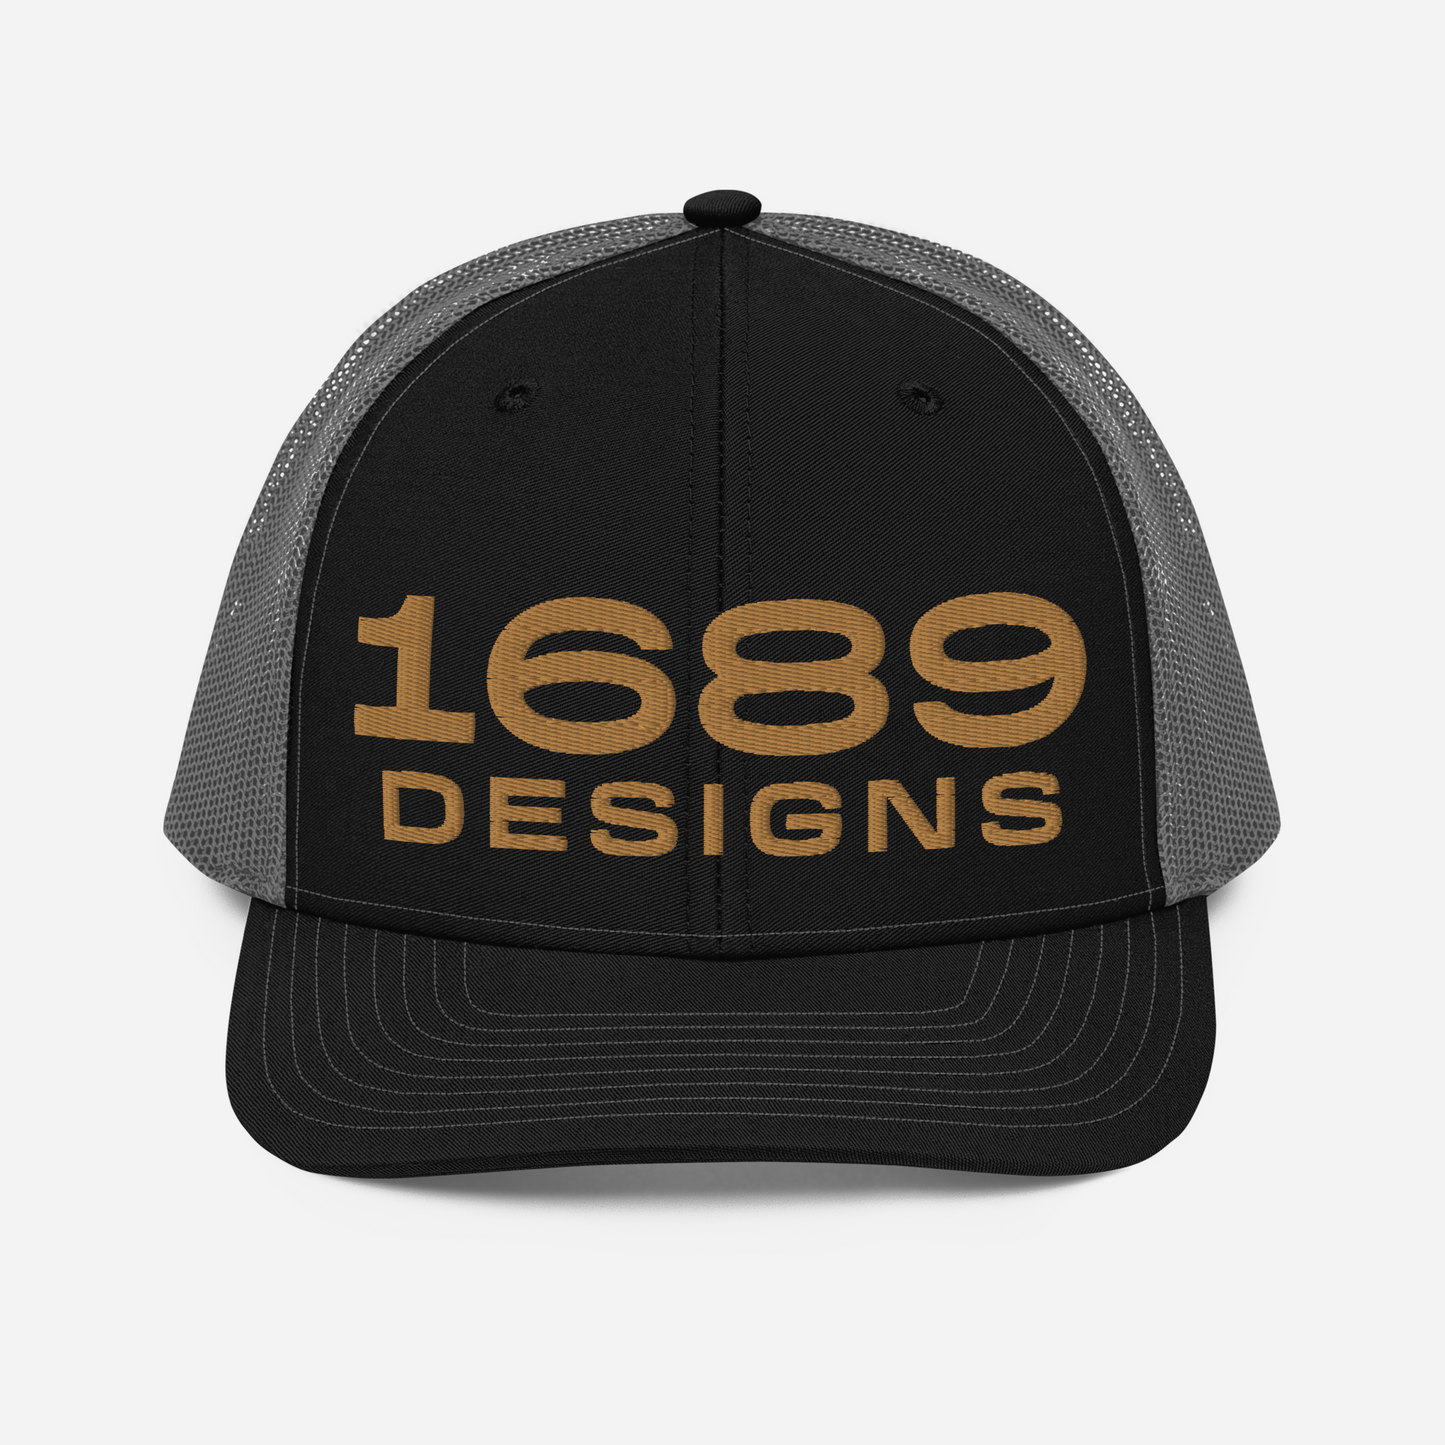 1689 Designs Richardson Trucker Hat